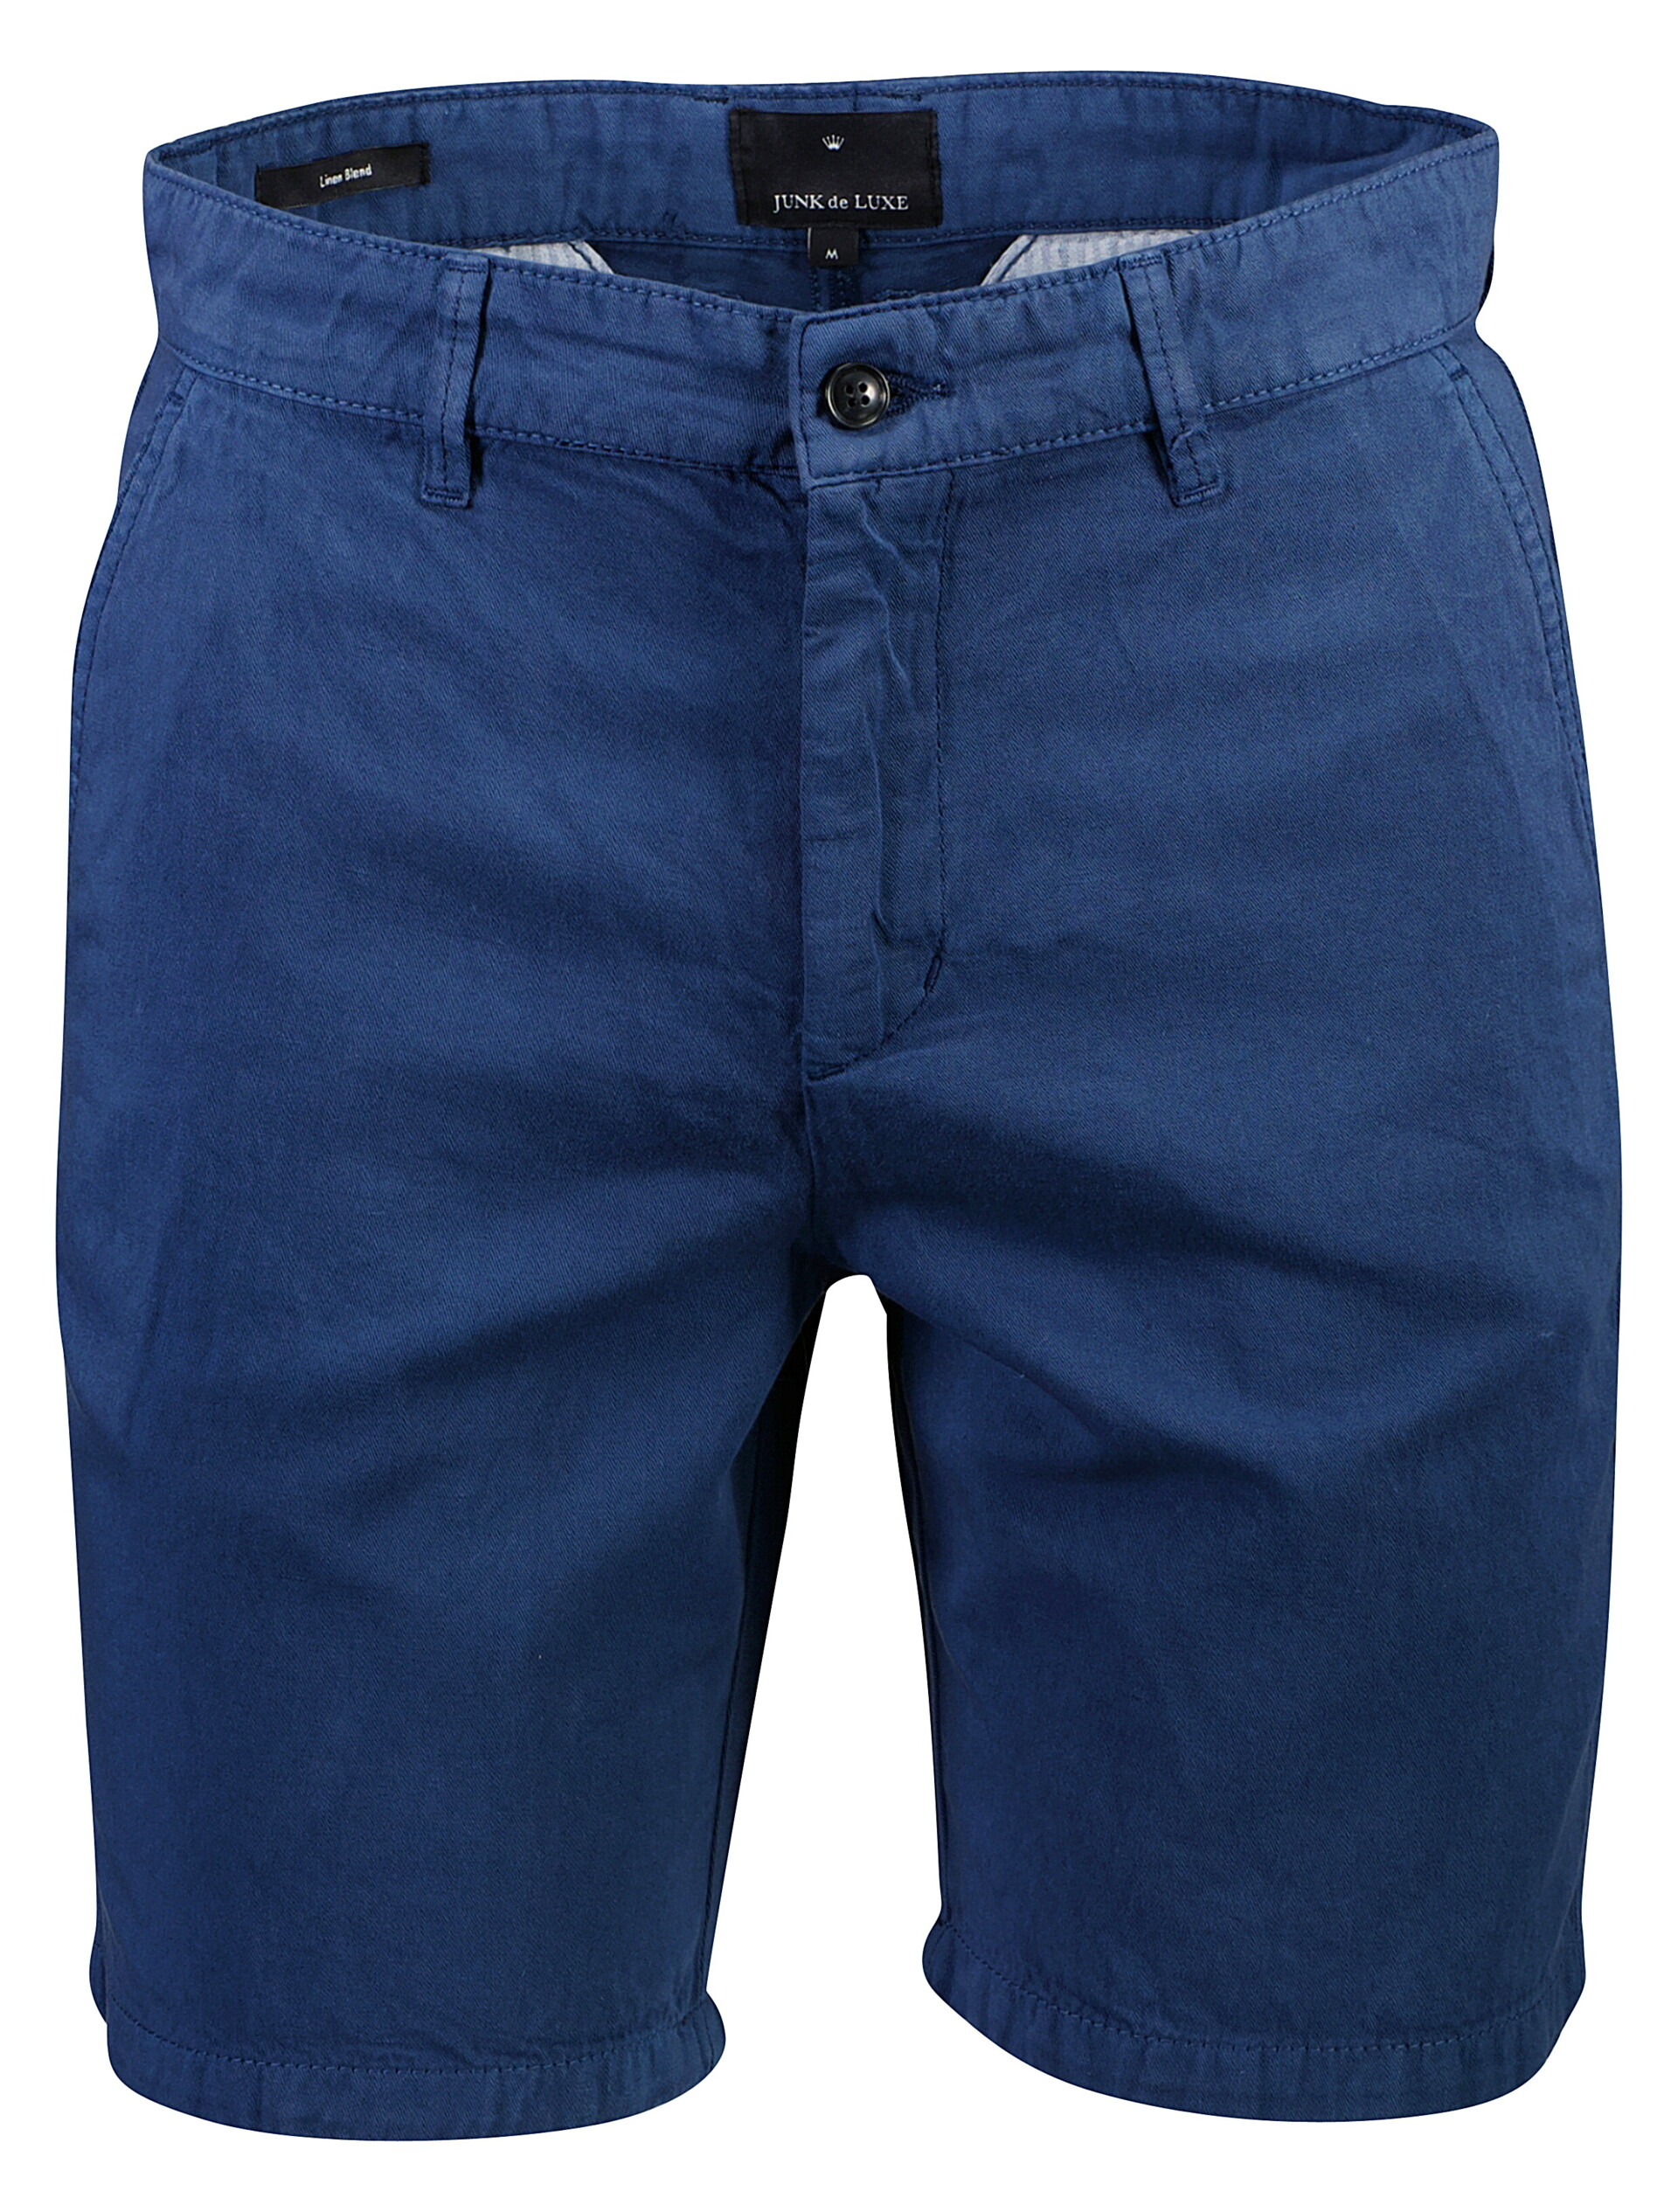 Junk de Luxe Linen shorts blue / dk navy